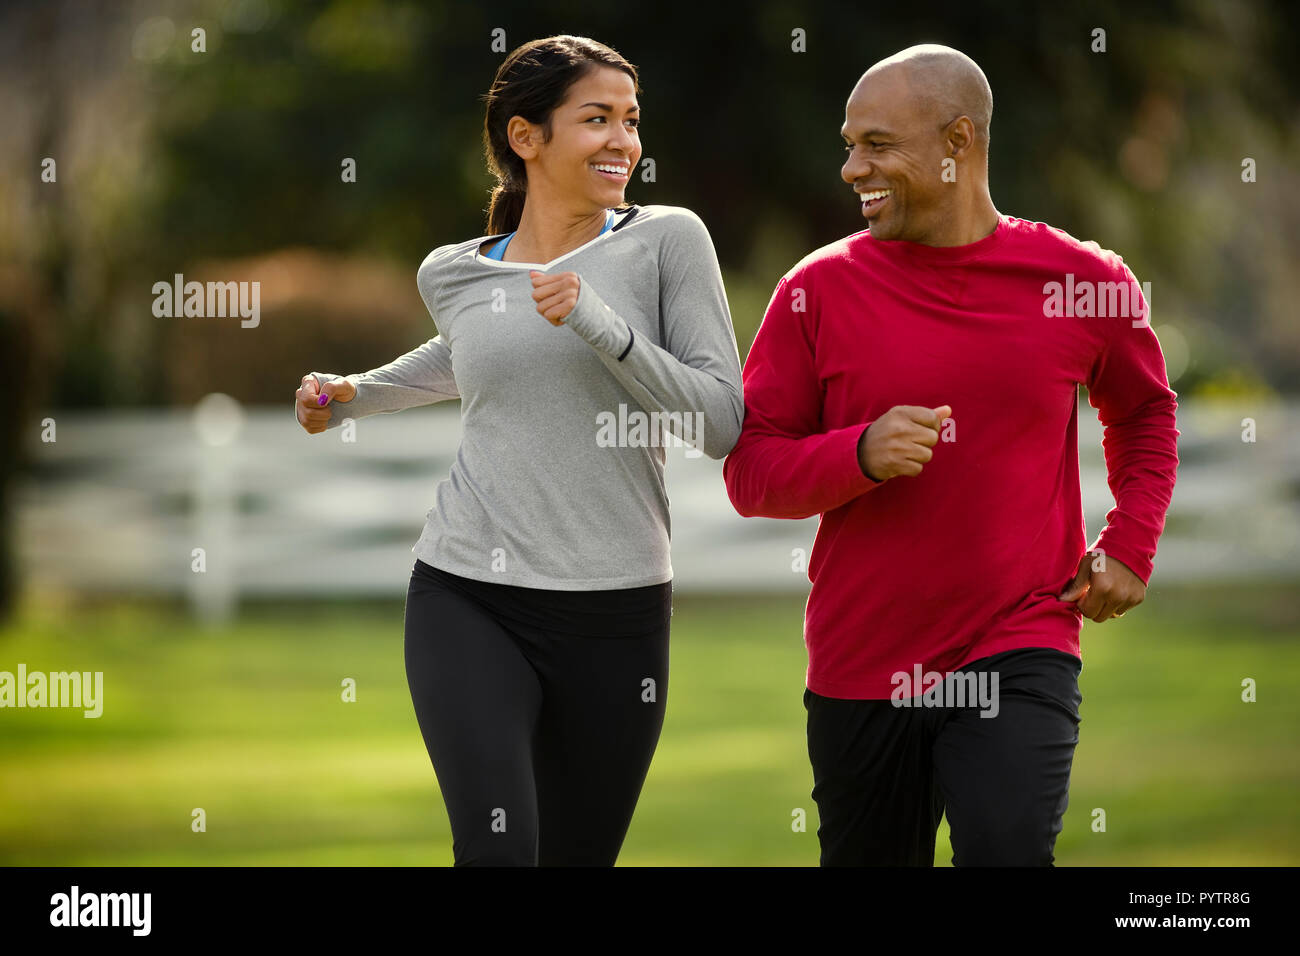 Glückliches junges Paar joggen zusammen in den Park. Stockfoto